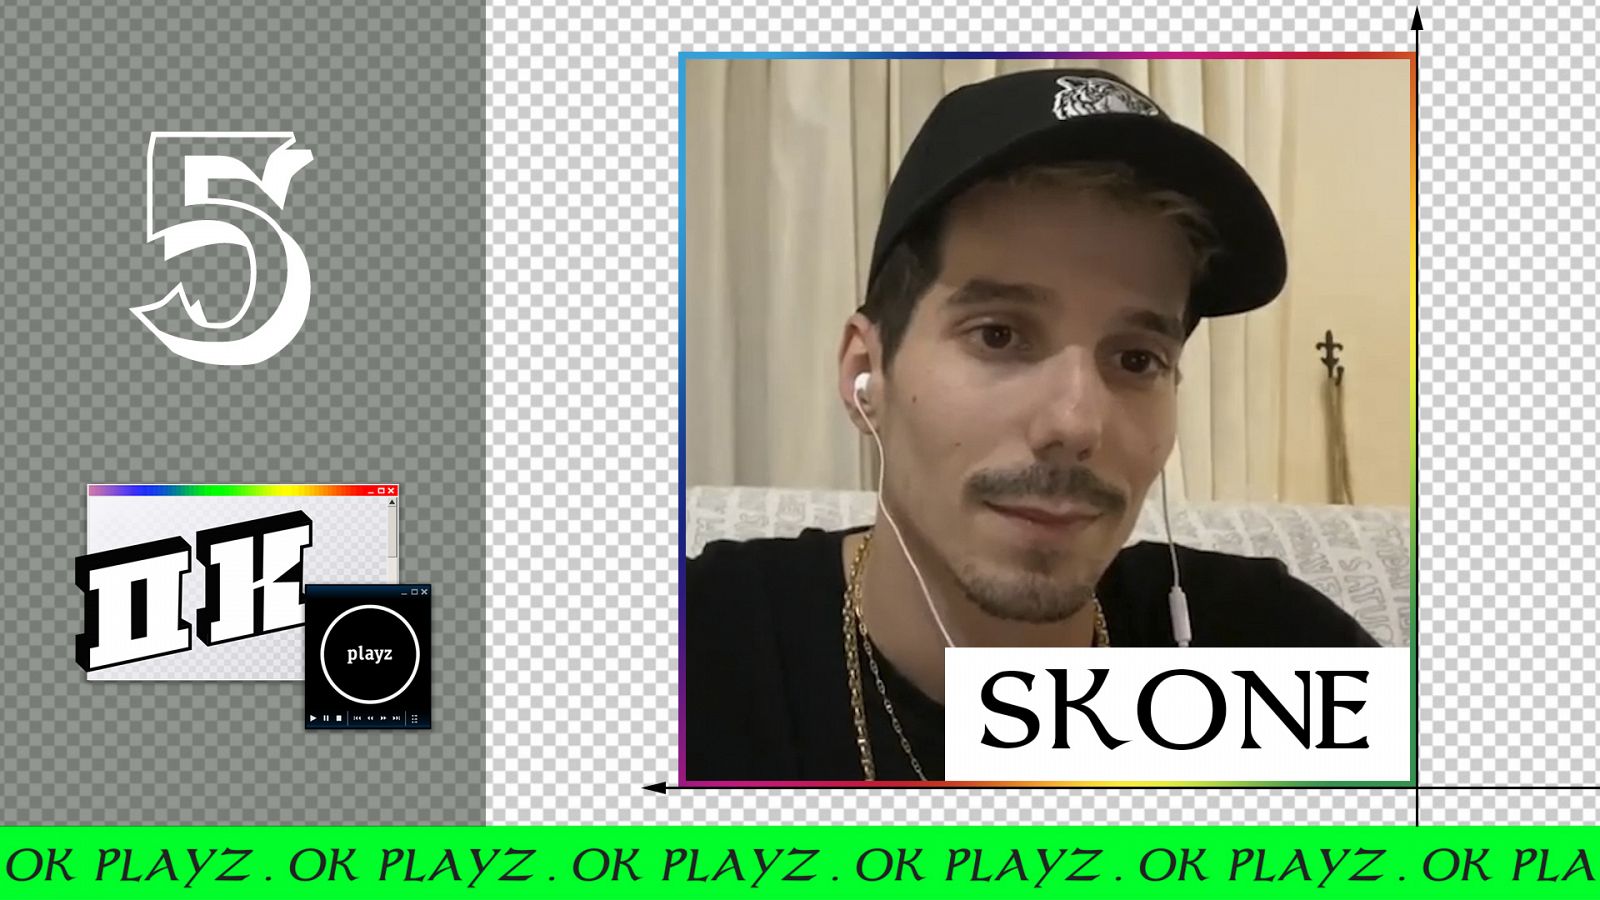 Ok Playz - Skone: "Si yo fuera como es realmente Skone, sería una persona de mierda" - RTVE.es